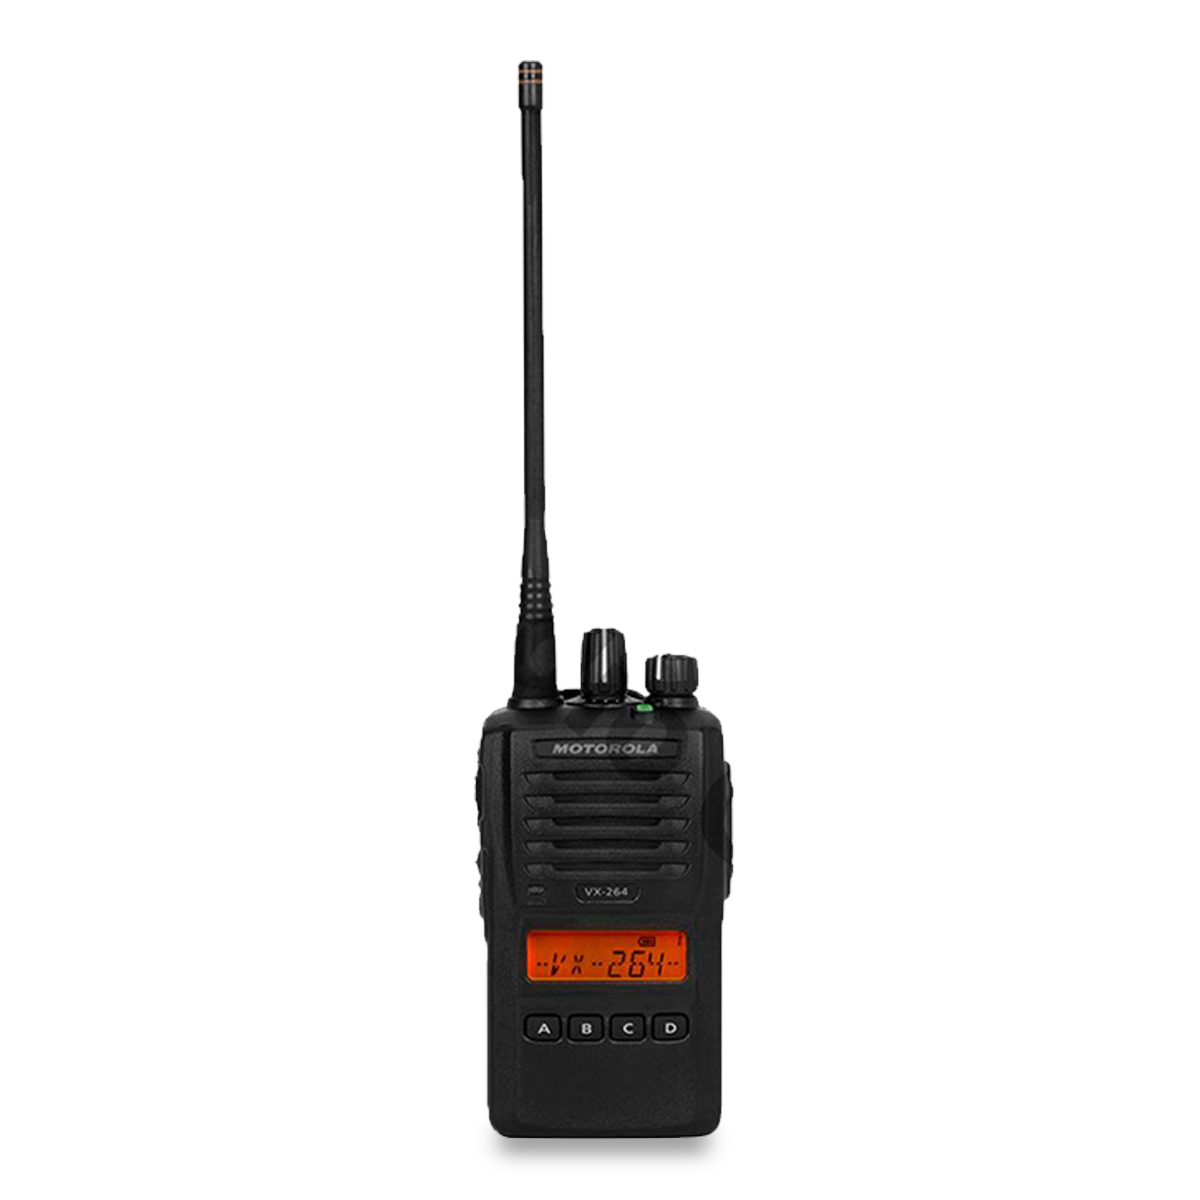 Radio Motorola VX-264 Analógico UHF 403-470 MHz